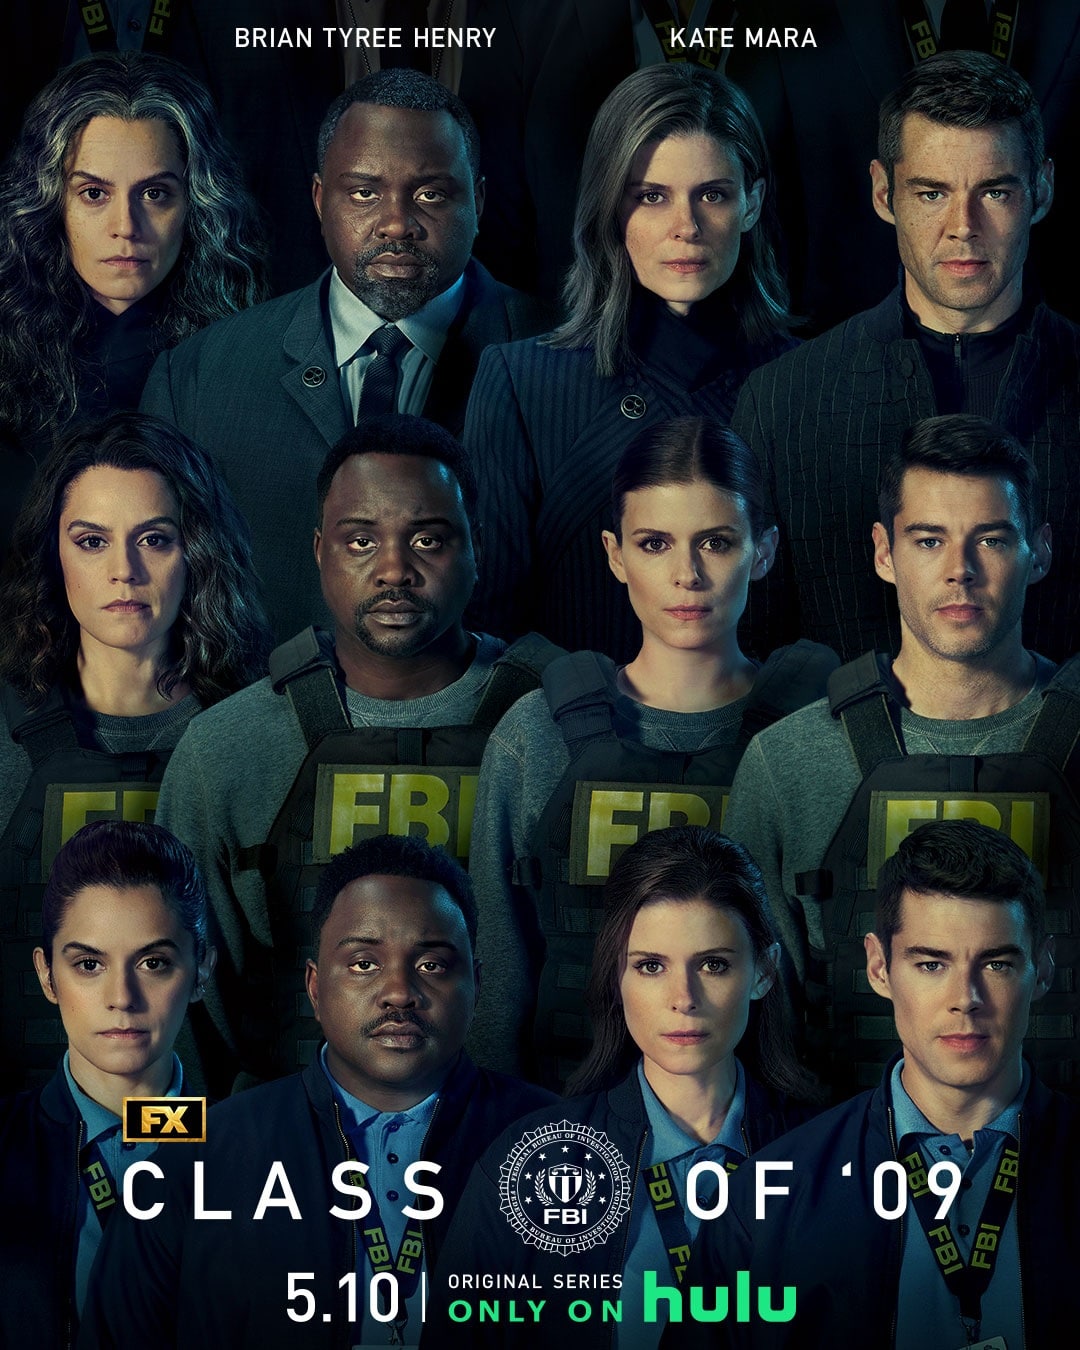 Class-of-09-Star-Plus-Poster Agentes do FBI | Série do FX com Kate Mara ganha data de estreia